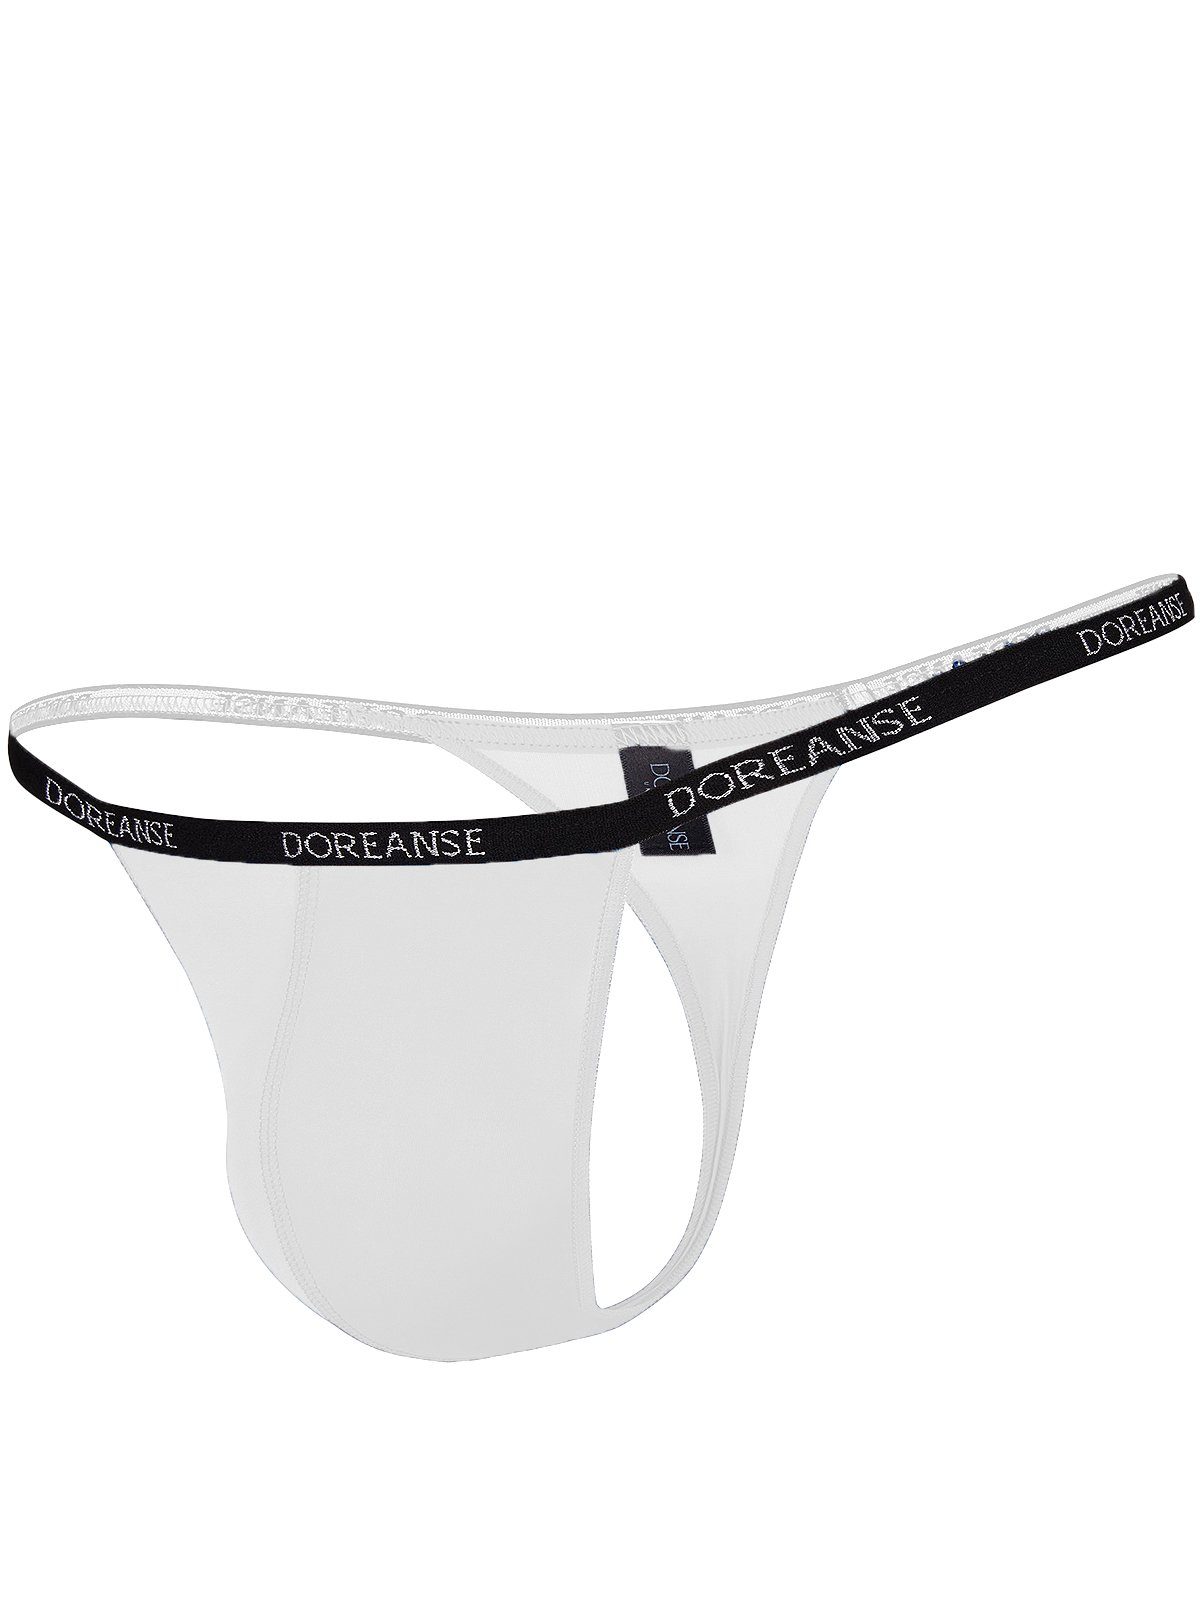 hauchdünnem Herren Weiß Qualitäts-Micro Underwear aus Doreanse Stringtanga DA1390 G-String